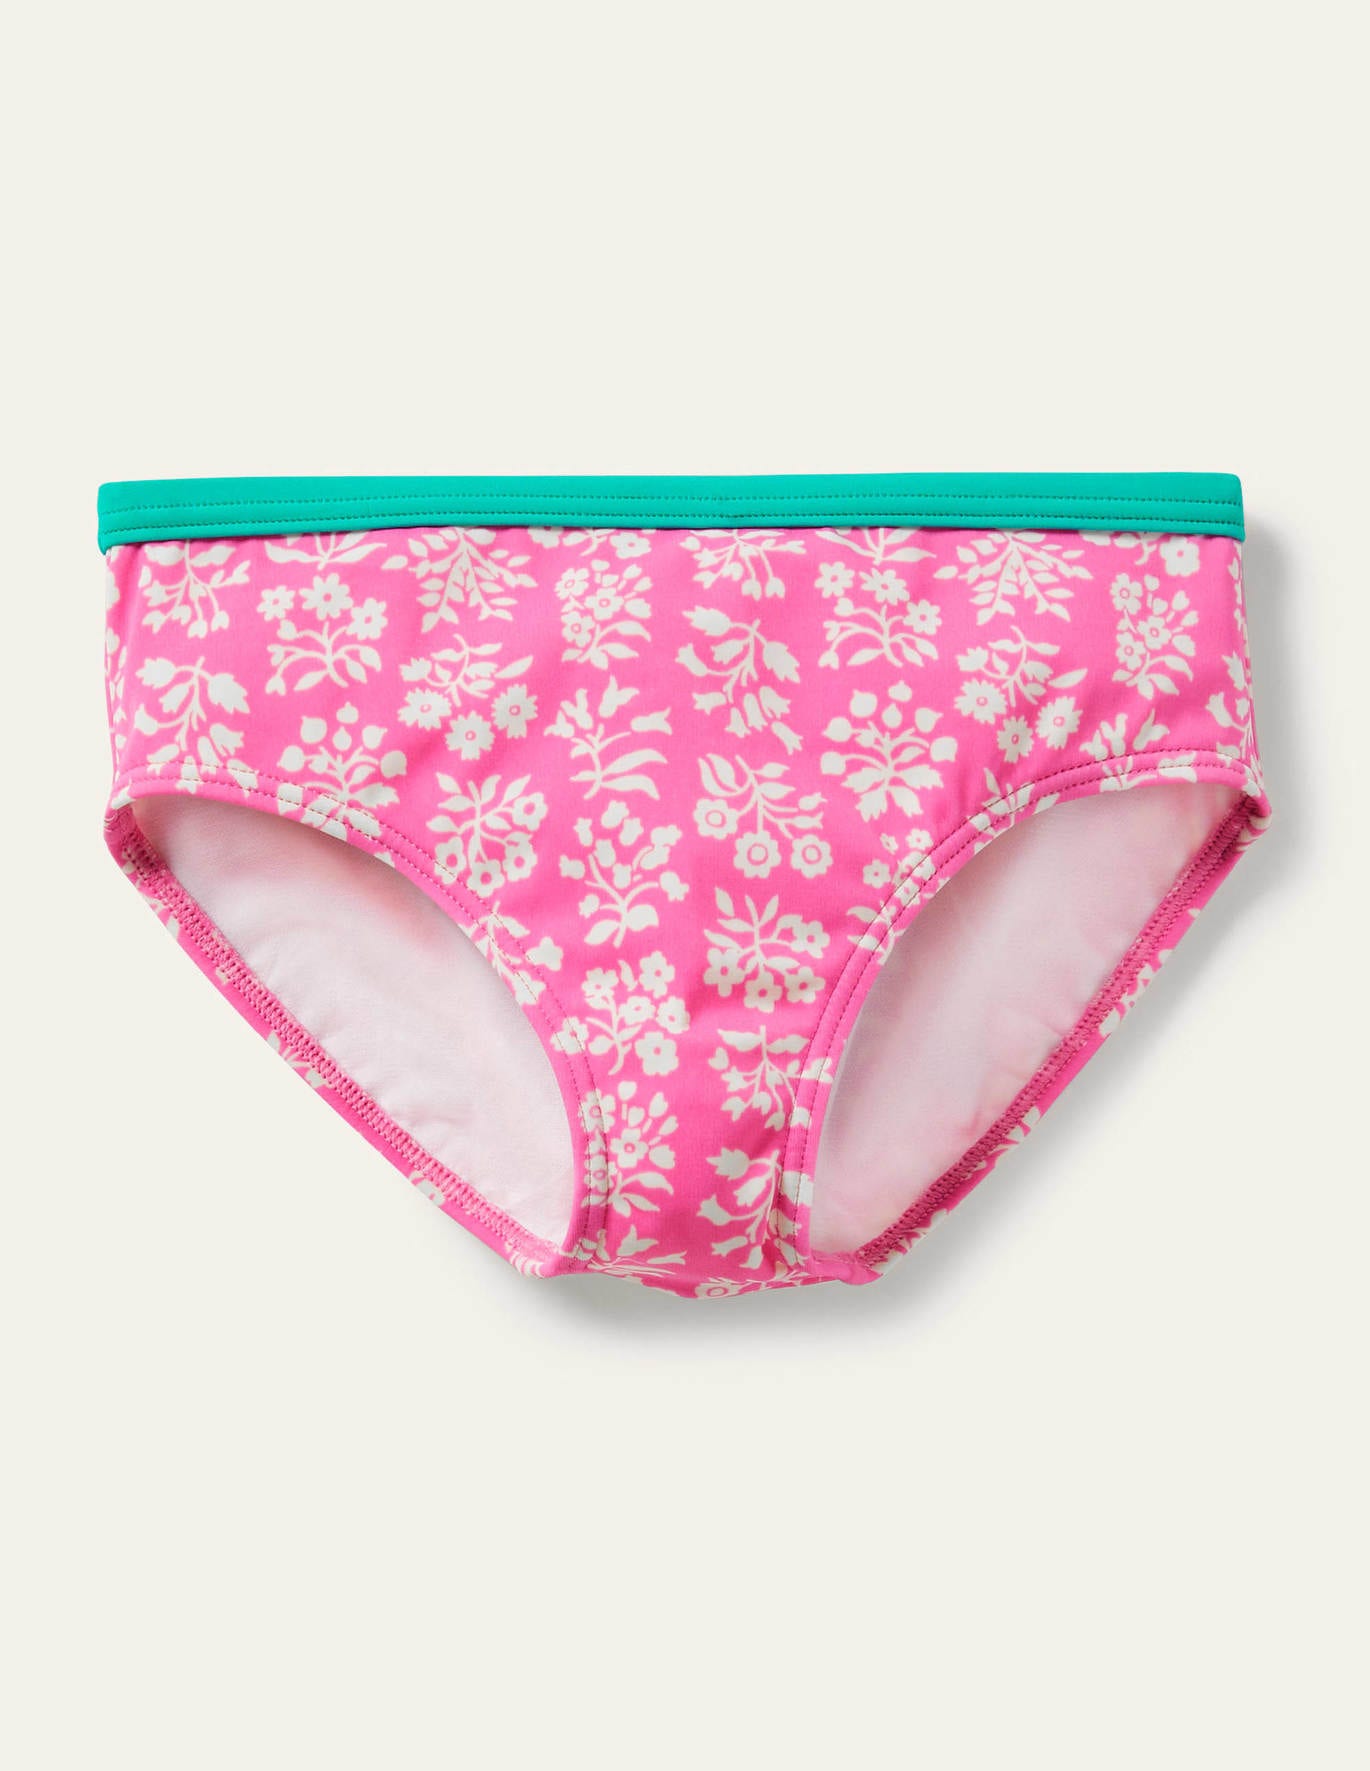 Boden Patterned Bikini Bottoms - Strawberry Pink Woodblock